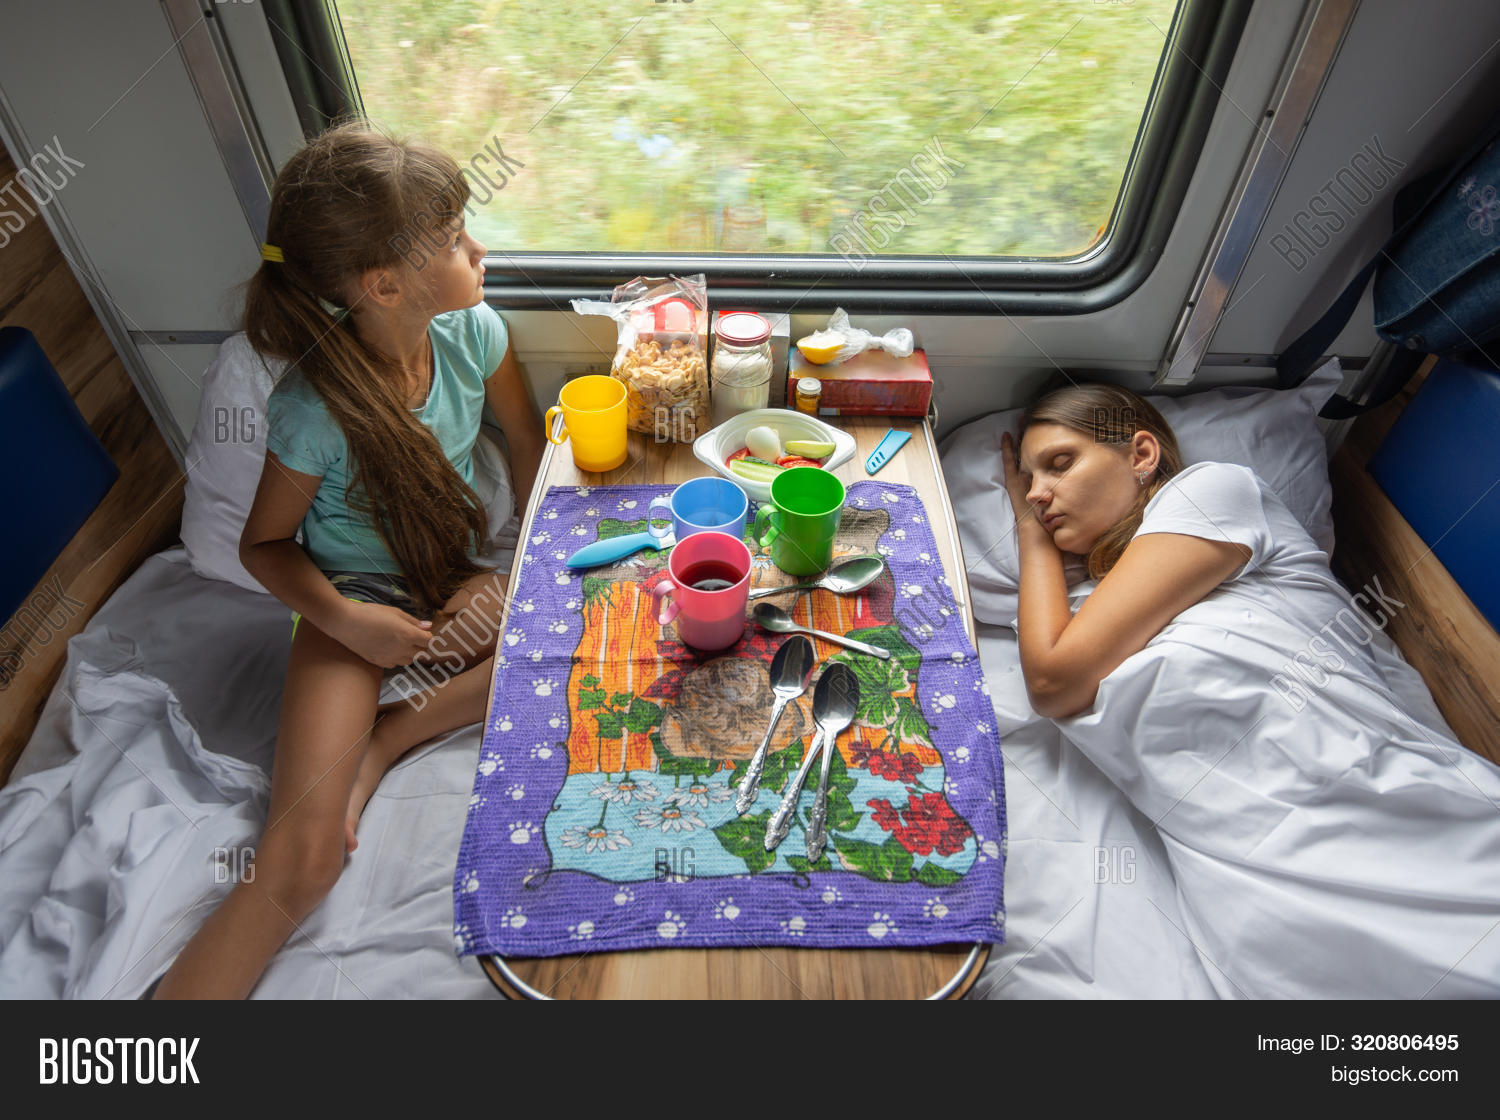 Поезд папа мама. Поезда для детей. Мама с ребенком в поезде. Дети спят в поезде. Поездка на поезде с детьми.